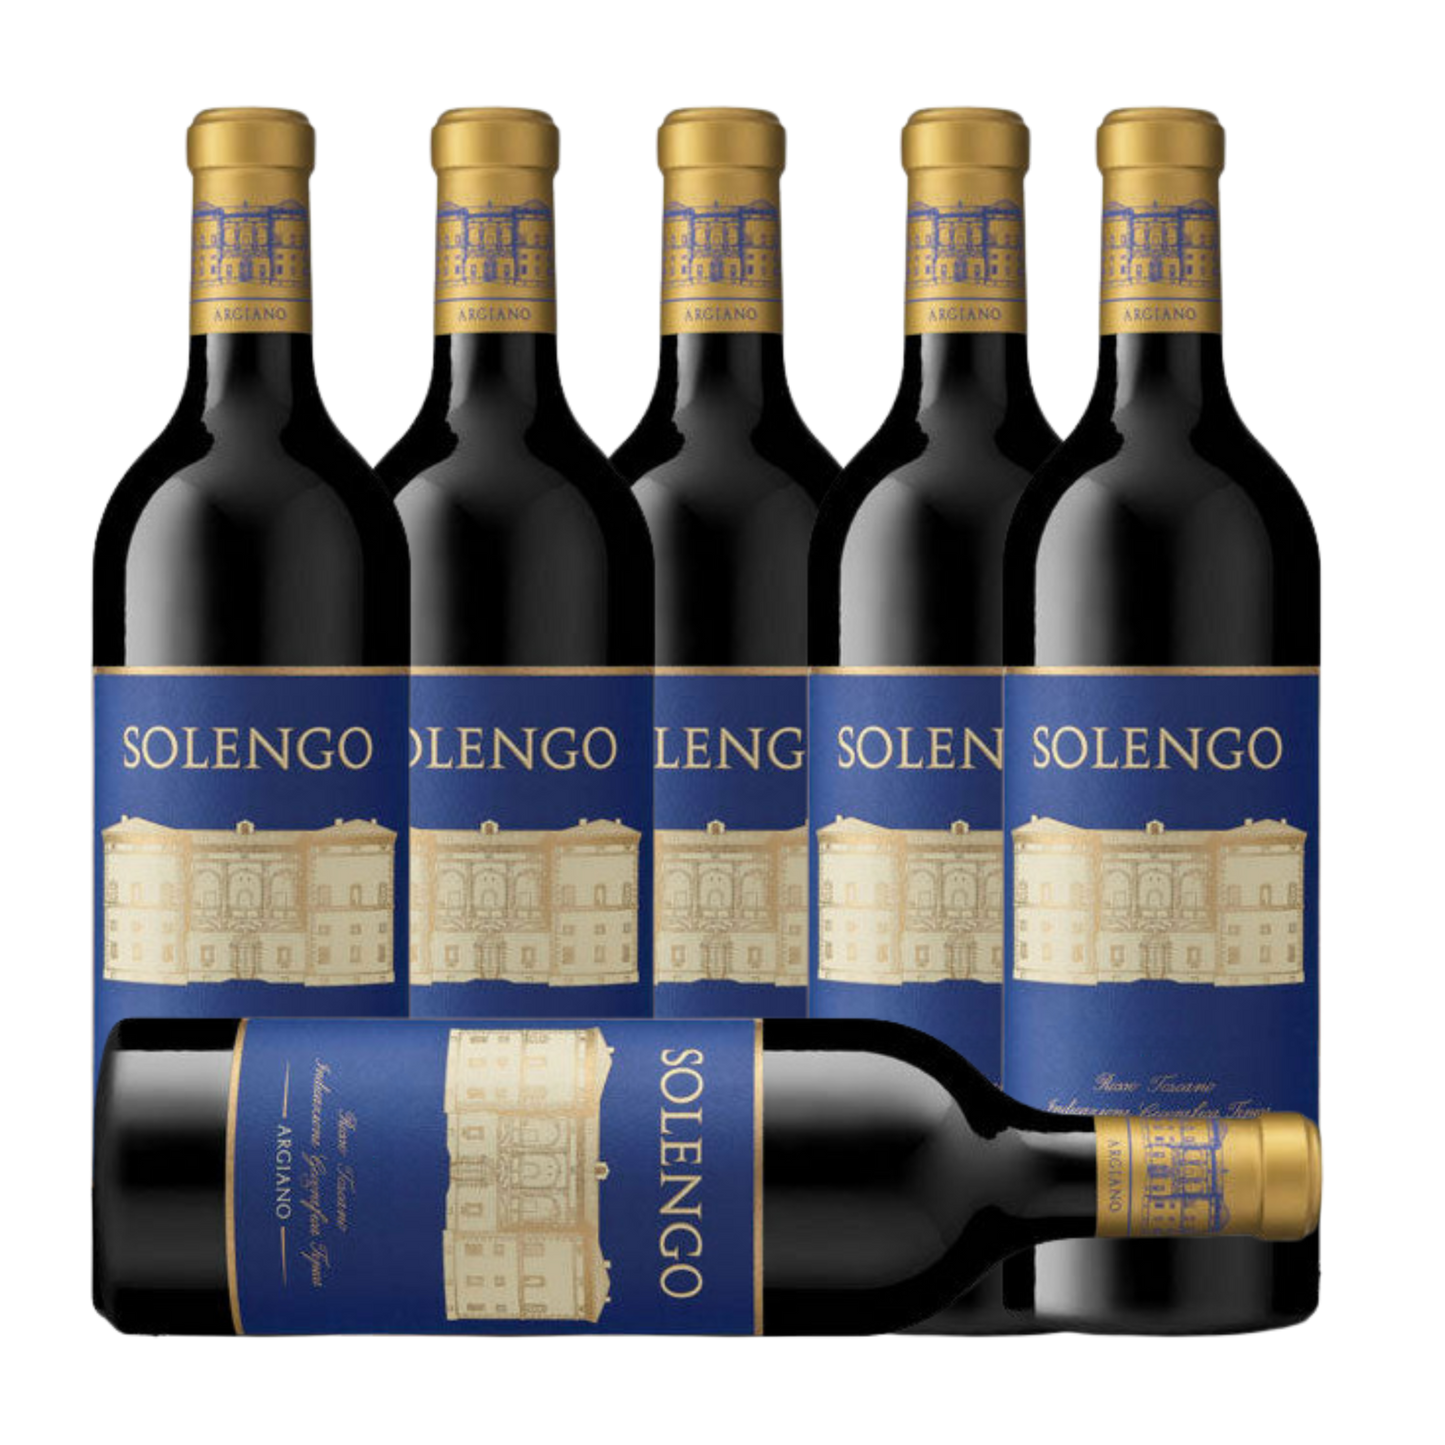 Argiano Solengo IGT 2021 (6 Bottle Case)